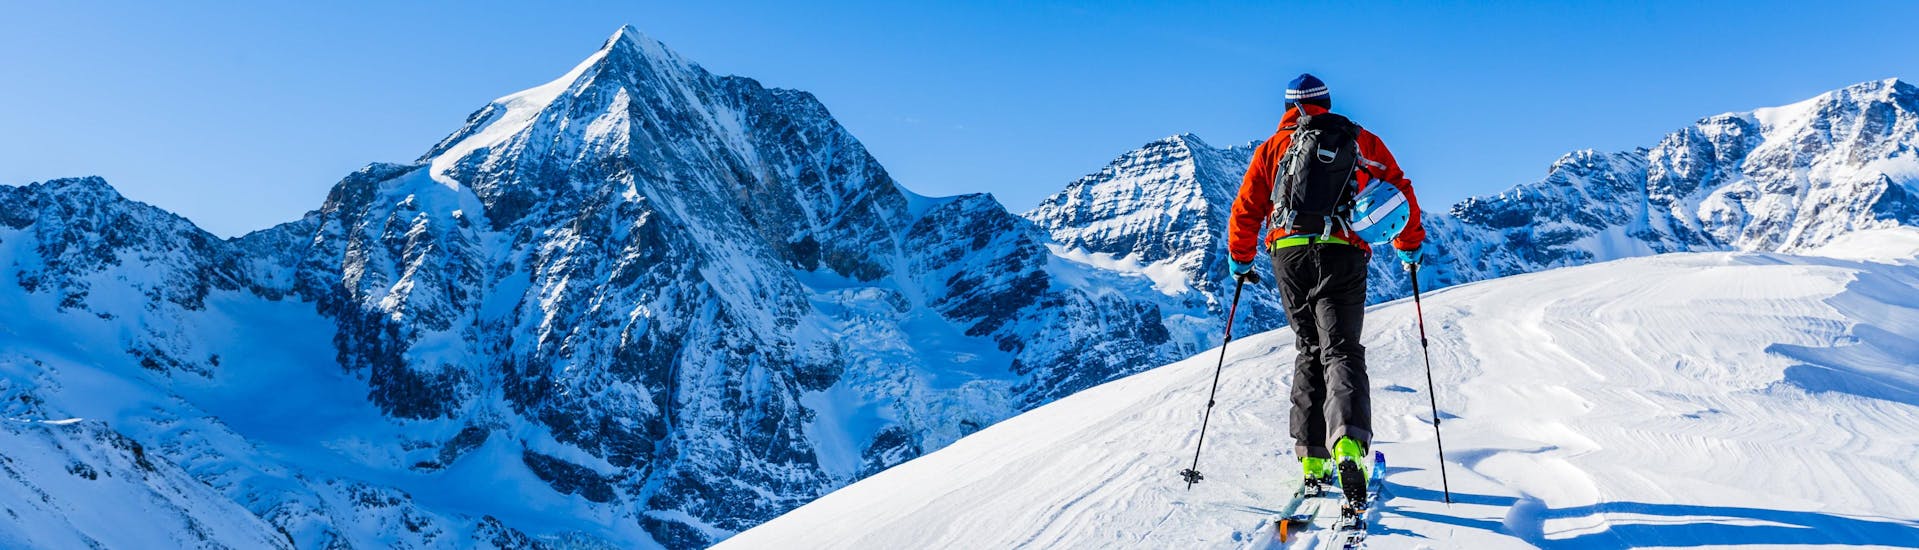 Un homme découvre le paysage montagneux enneigé en faisant du ski de randonnée.